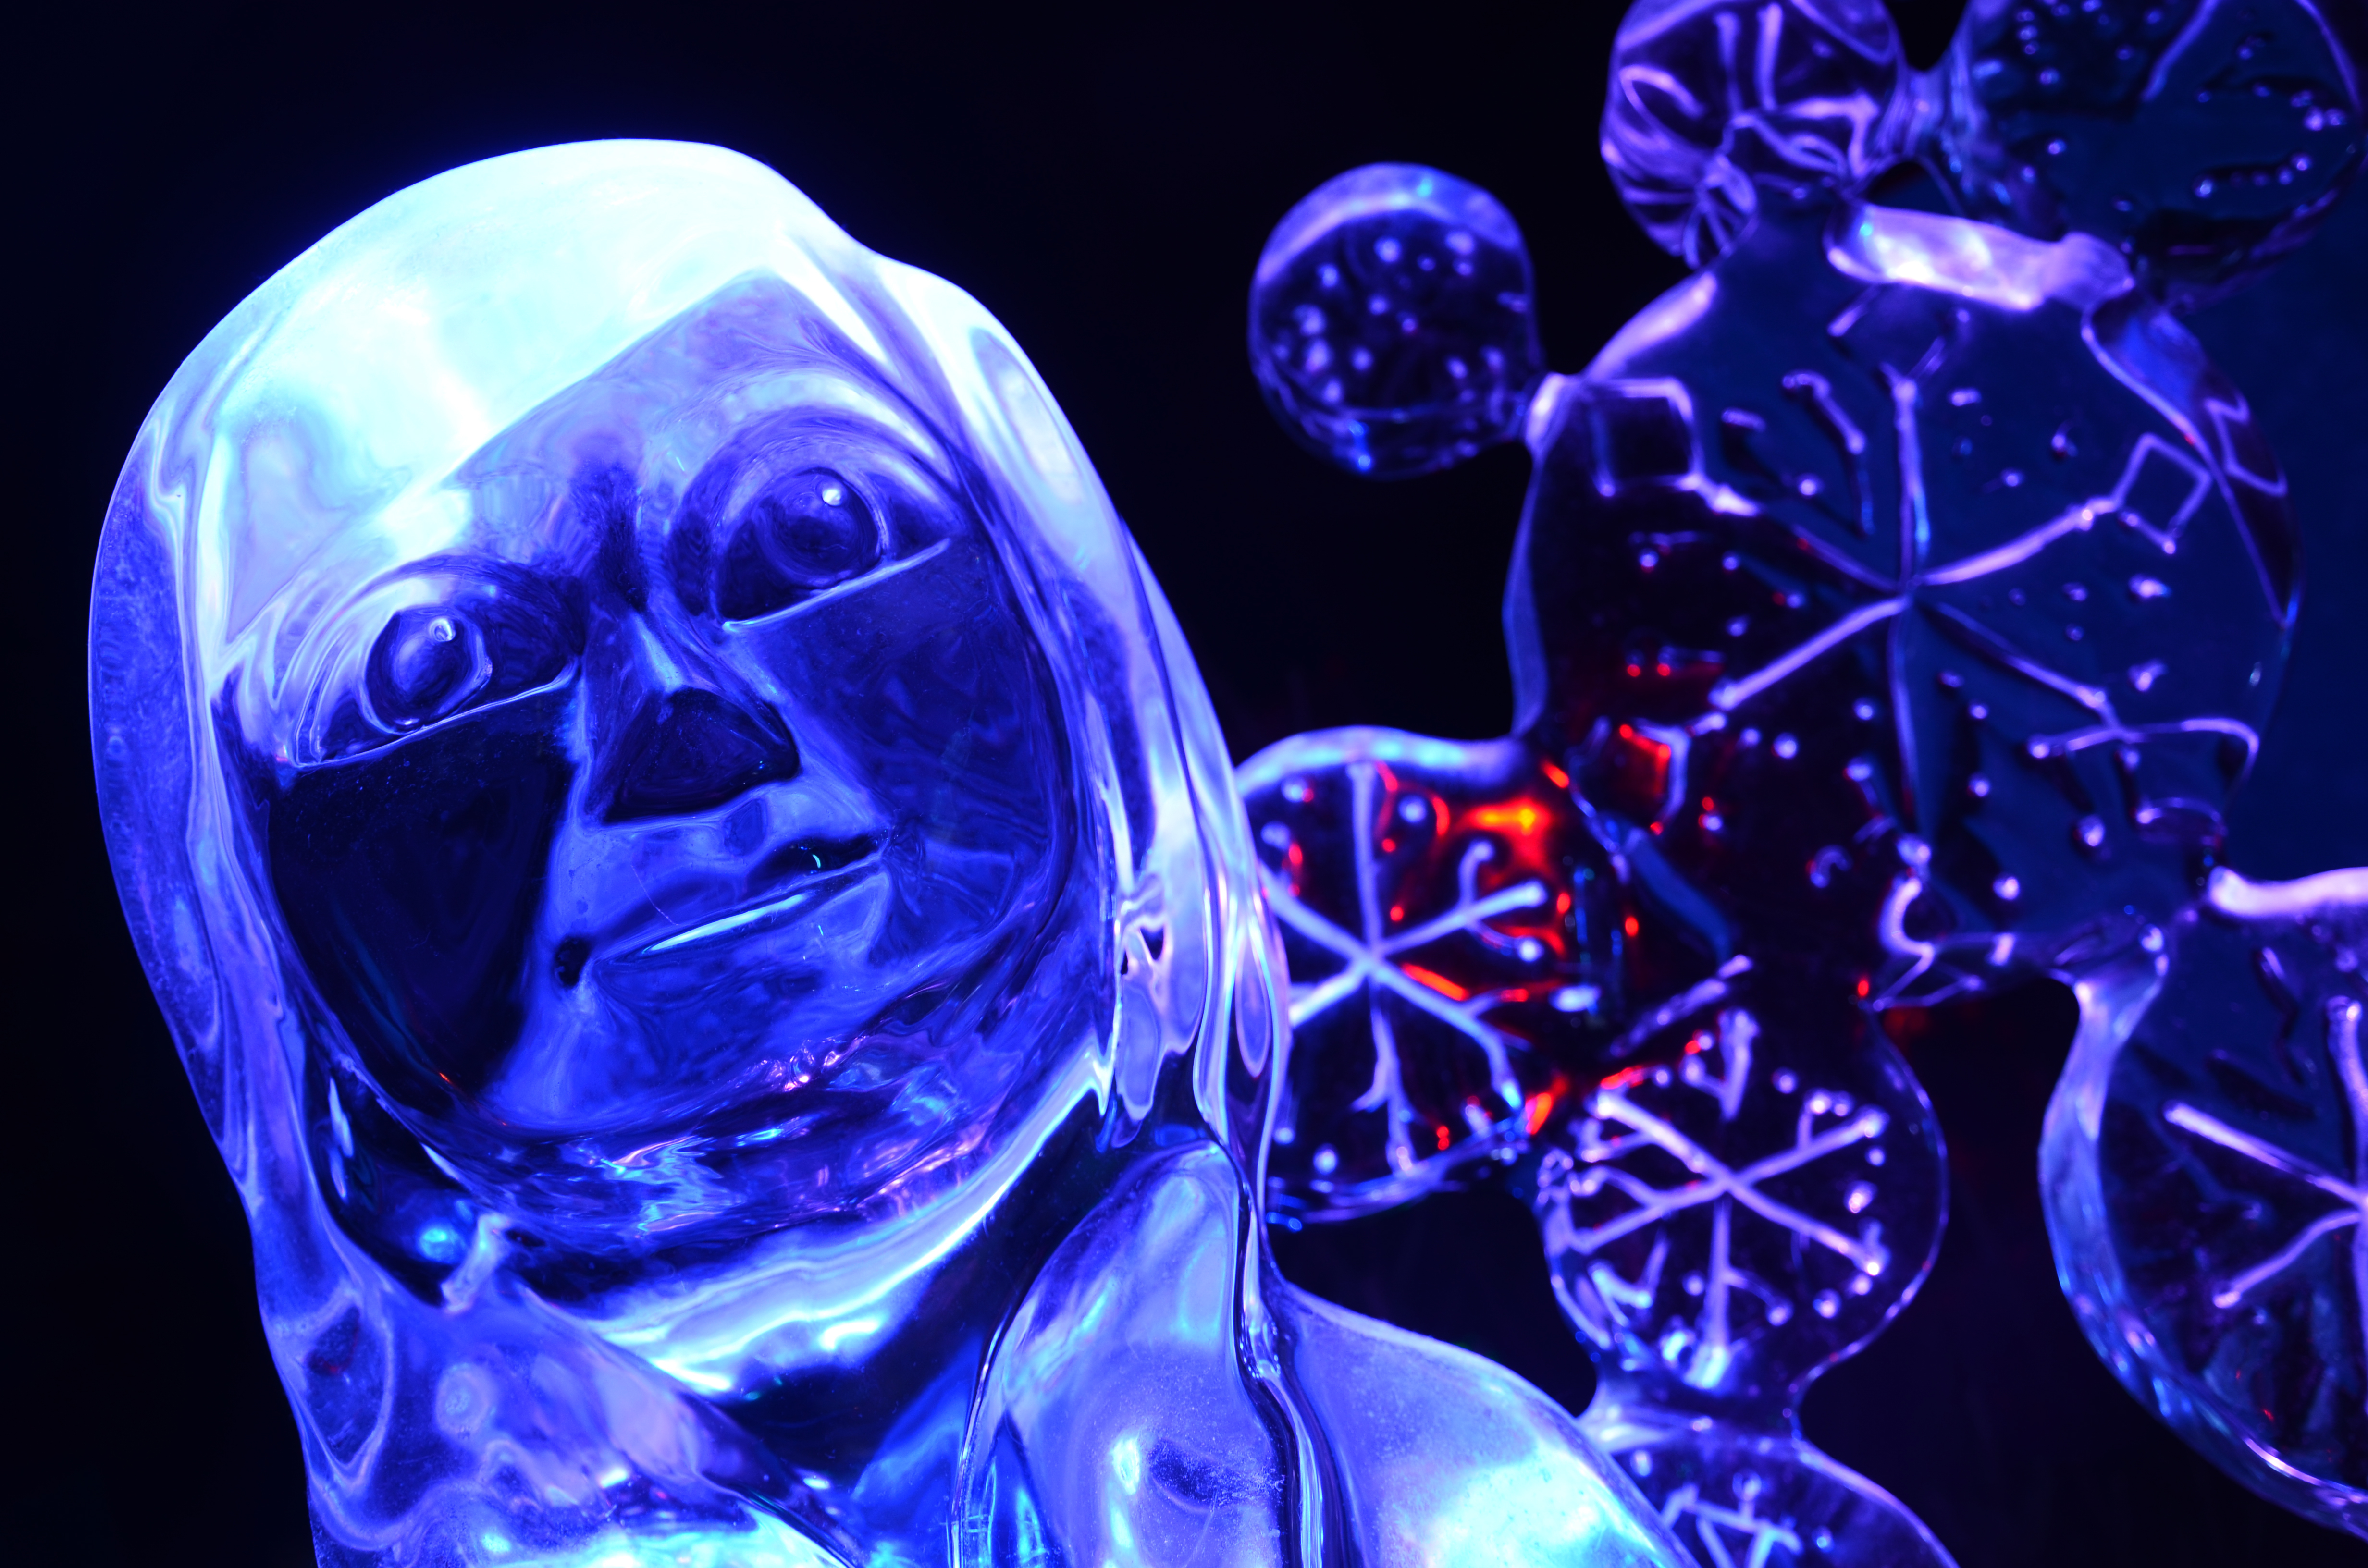 Ice sculptures Disneys Frozen Zwolle The Netherlands 2015